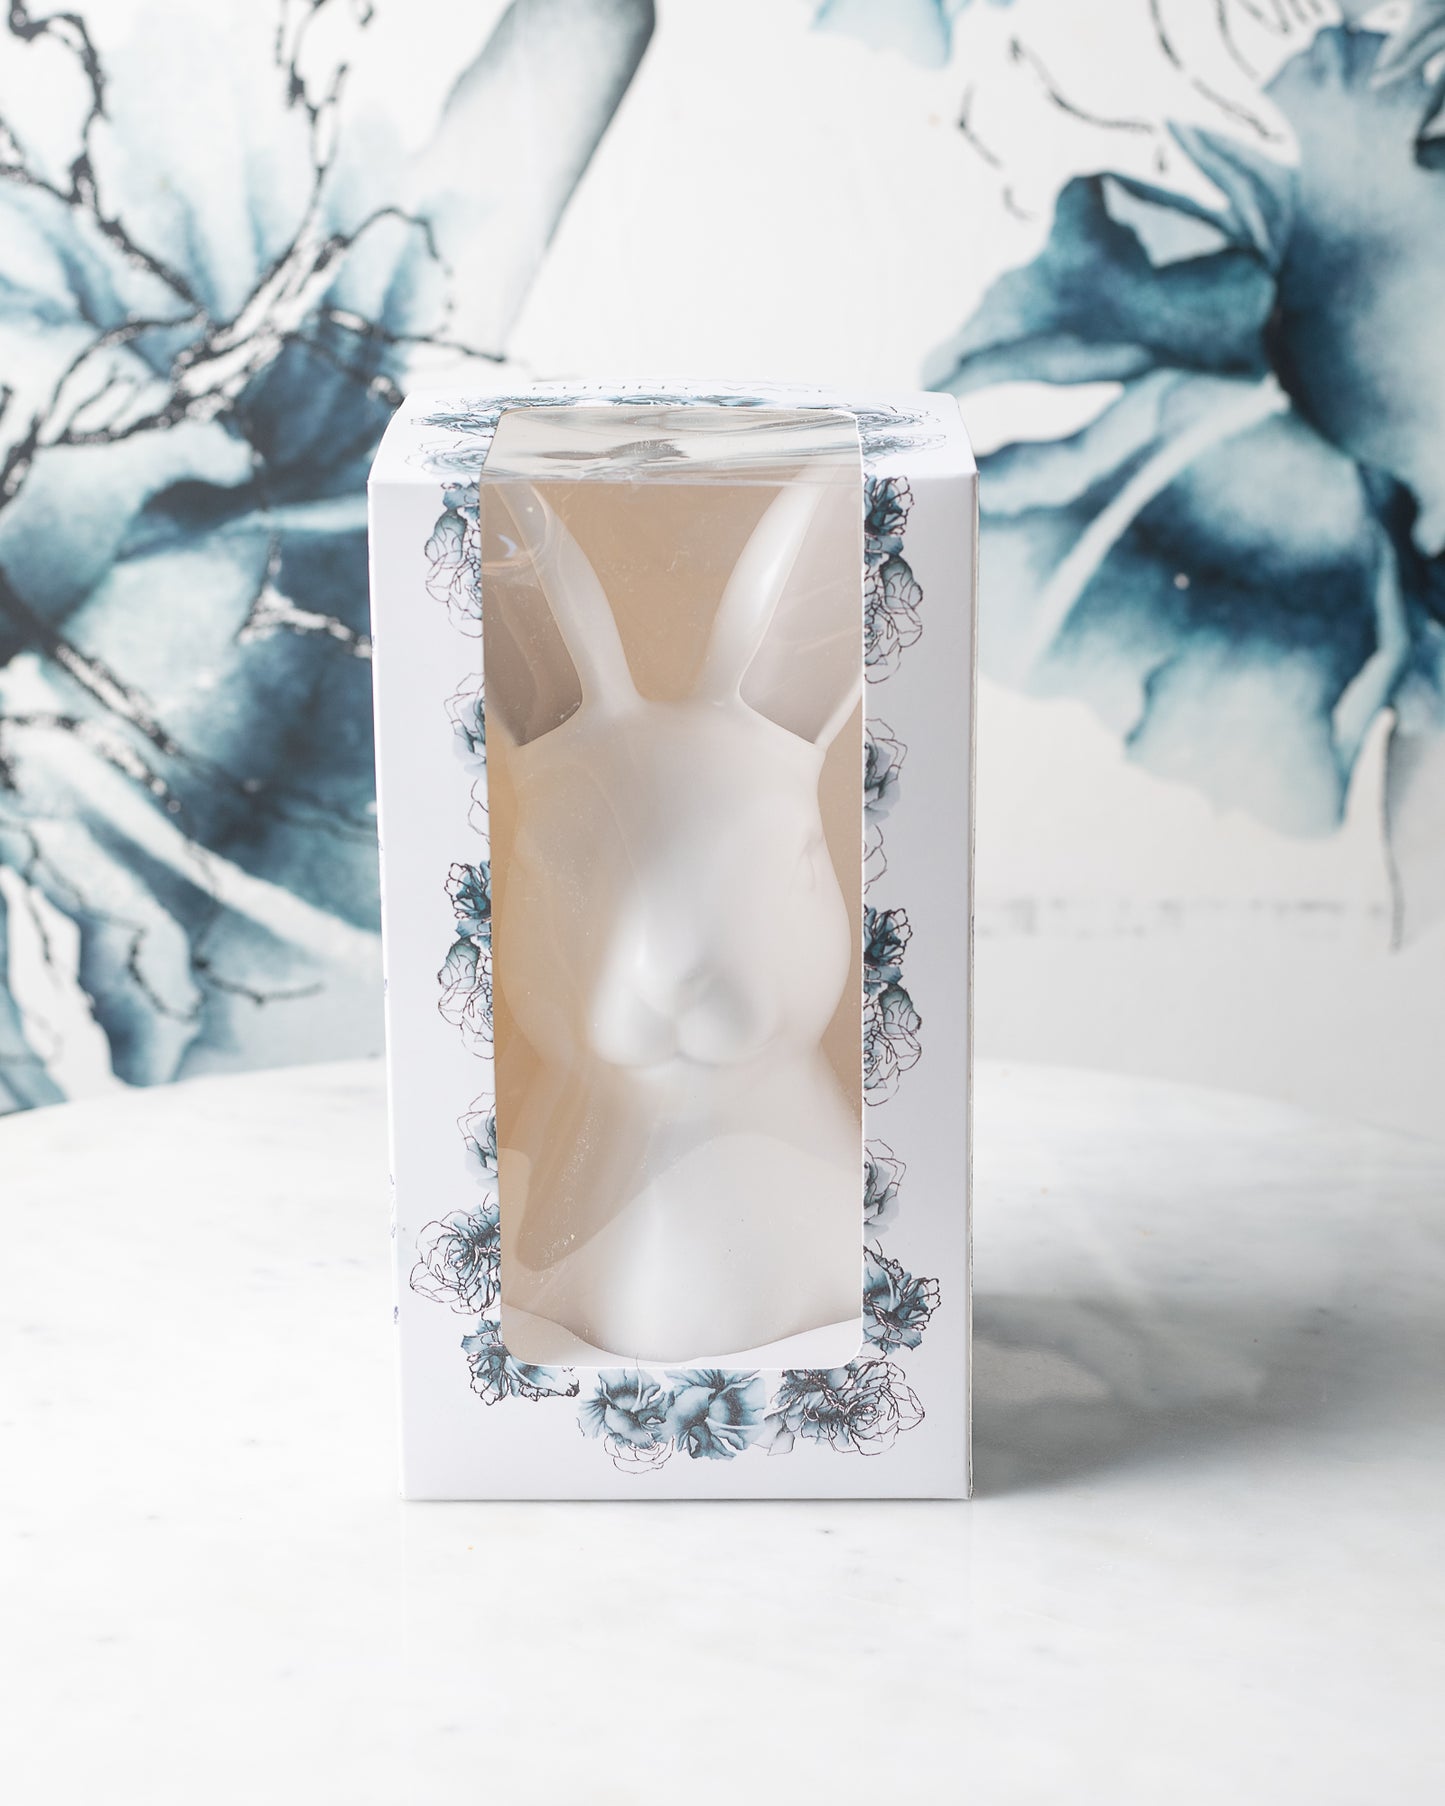 bunny vase